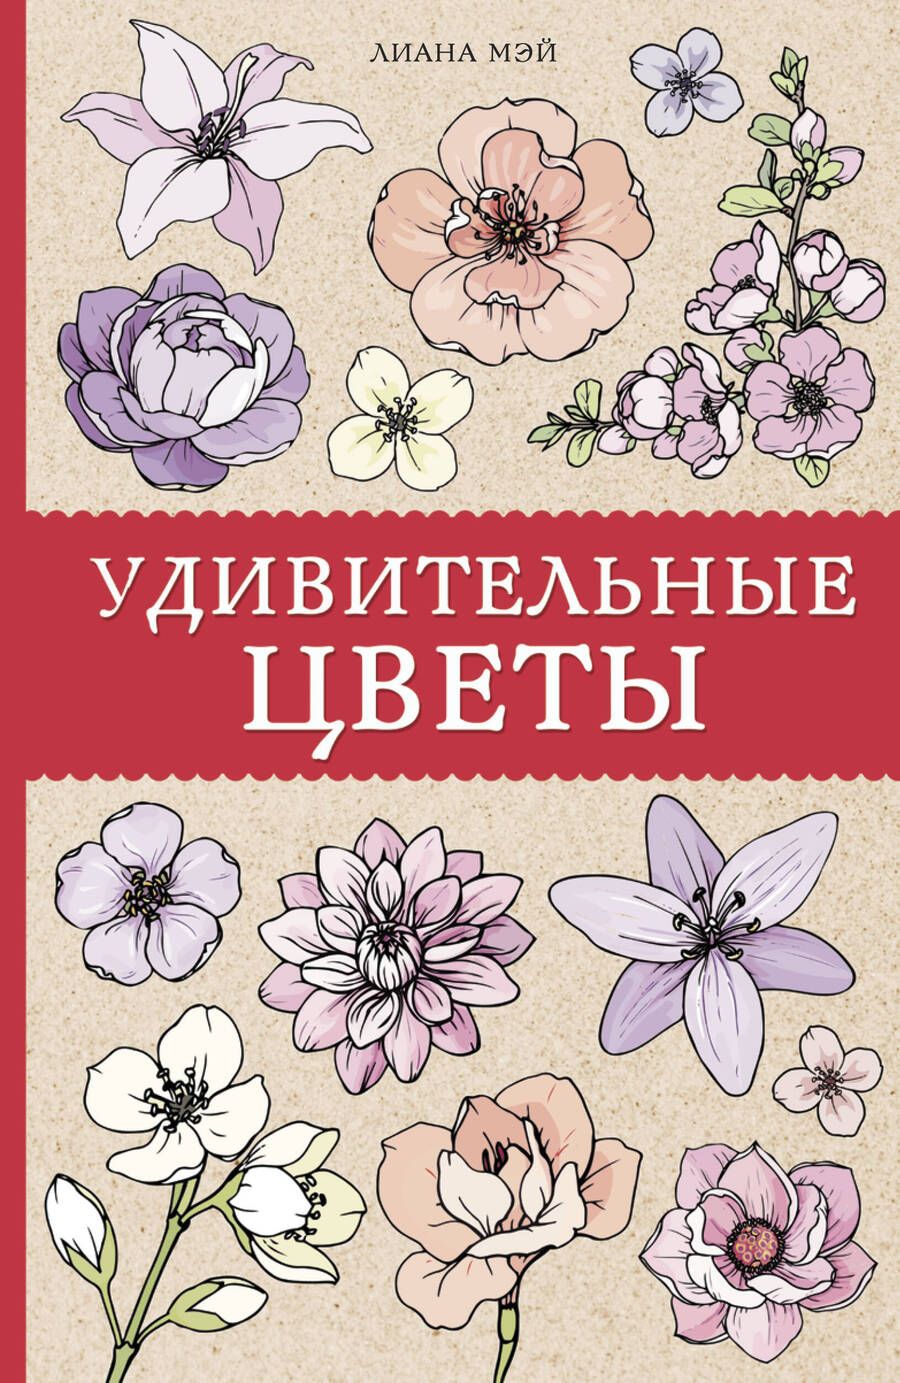 Обложка книги "Л. Мэй: Удивительные цветы"